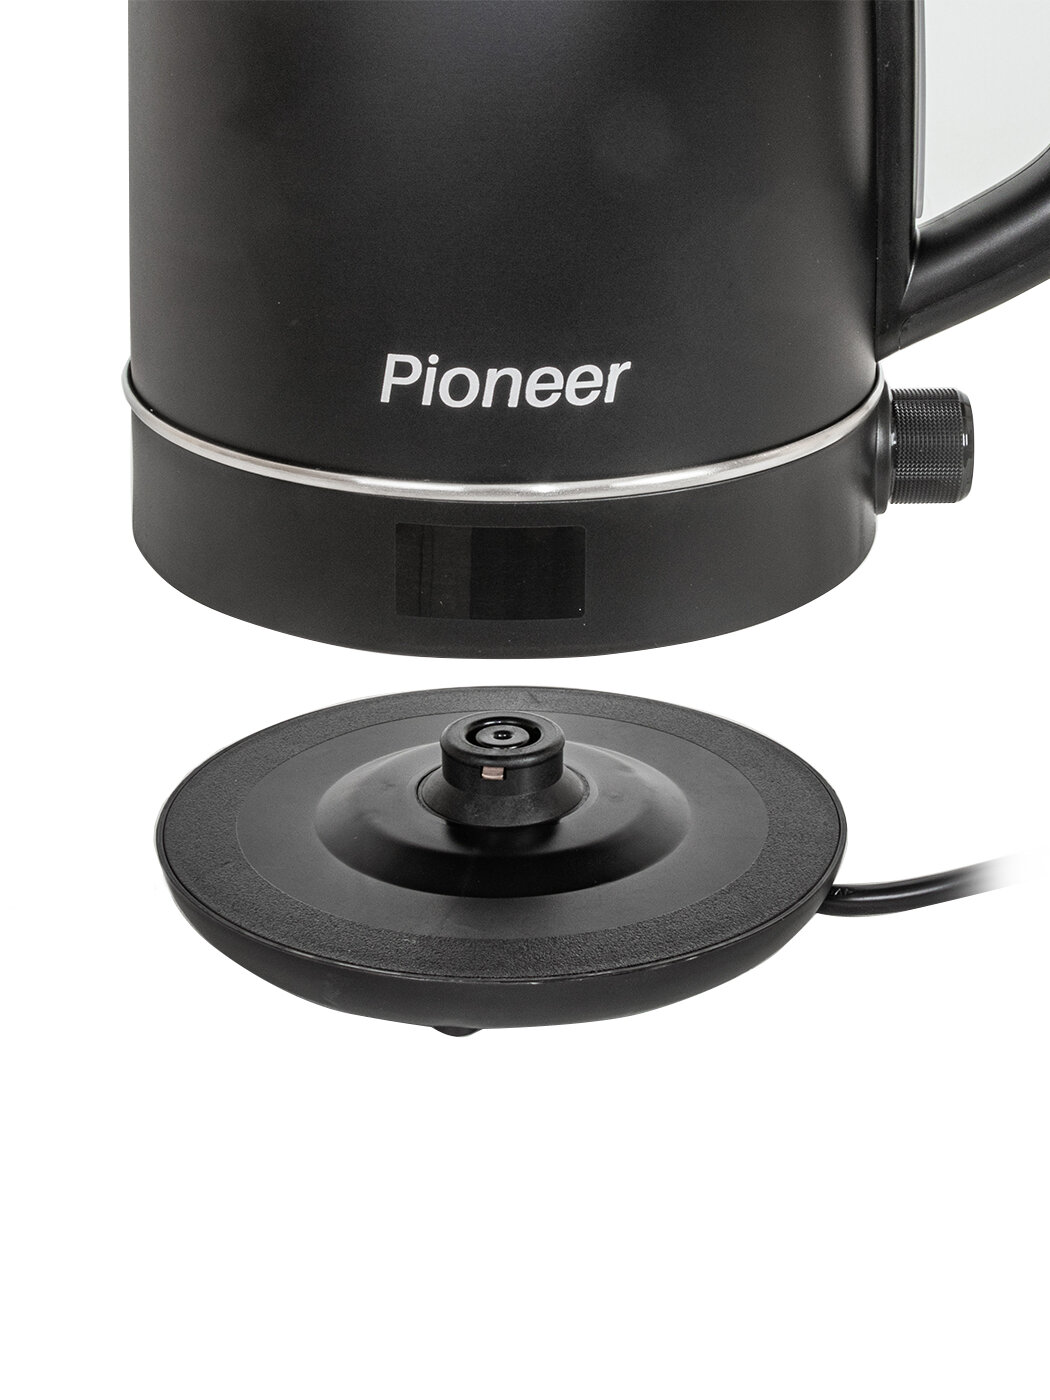 Электрический чайник Pioneer 1,7 л с регулировкой температуры 40-100гр, функцией поддержания тепла, контроллер STRIX, 2200 Вт - фотография № 7